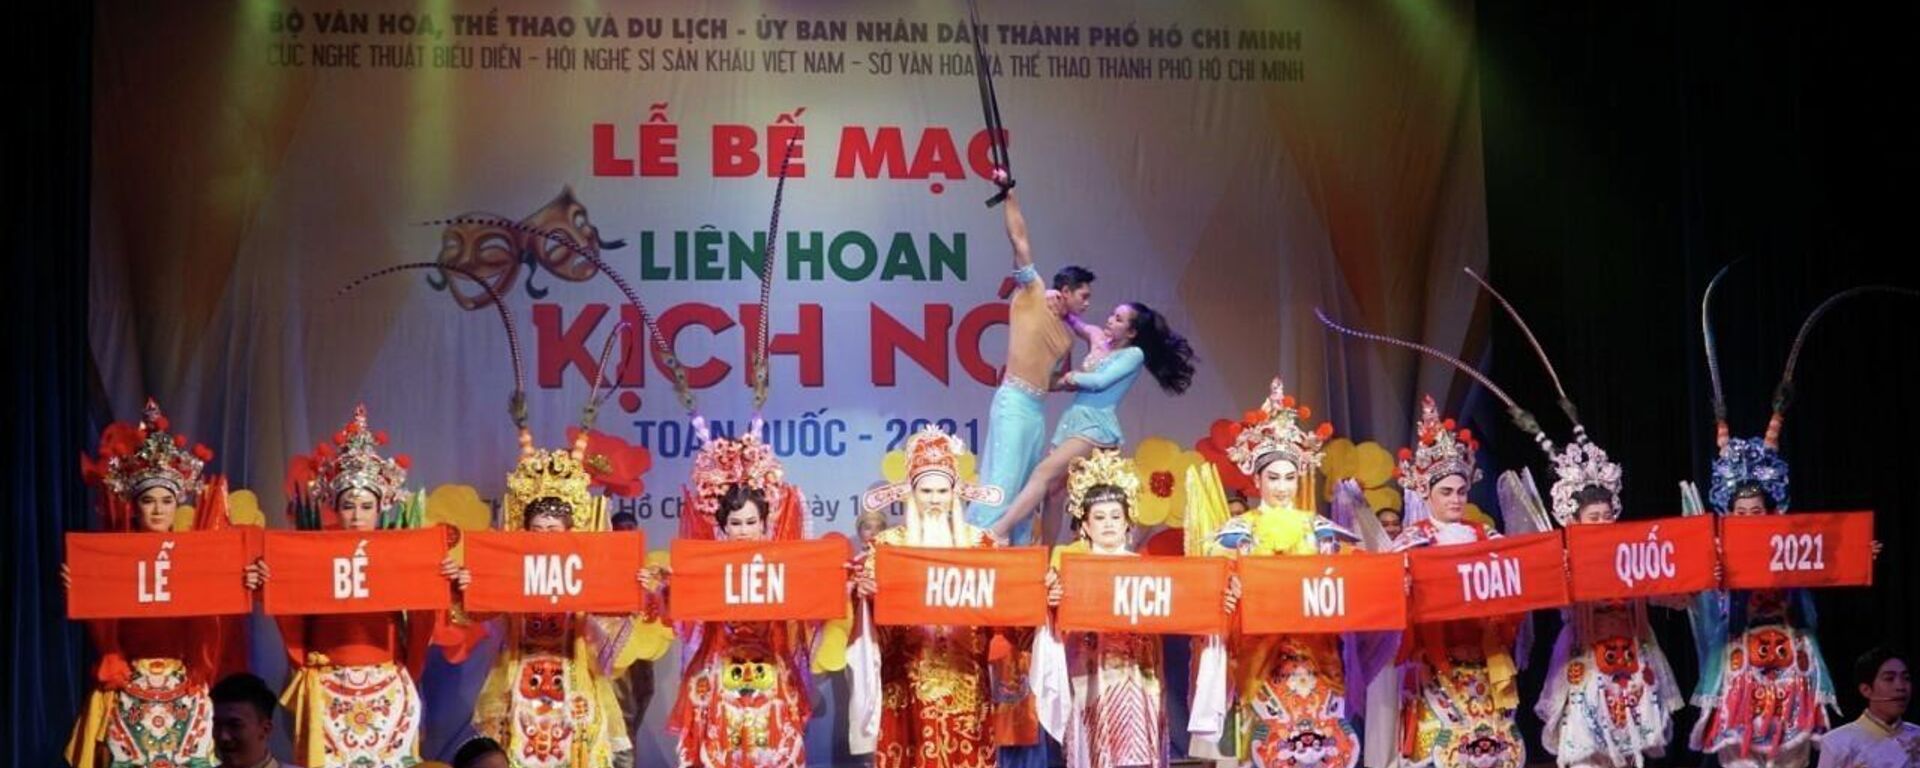 TP. Hồ Chí Minh: Lễ bế mạc Liên hoan Kịch nói toàn quốc 2021 - Sputnik Việt Nam, 1920, 19.01.2022